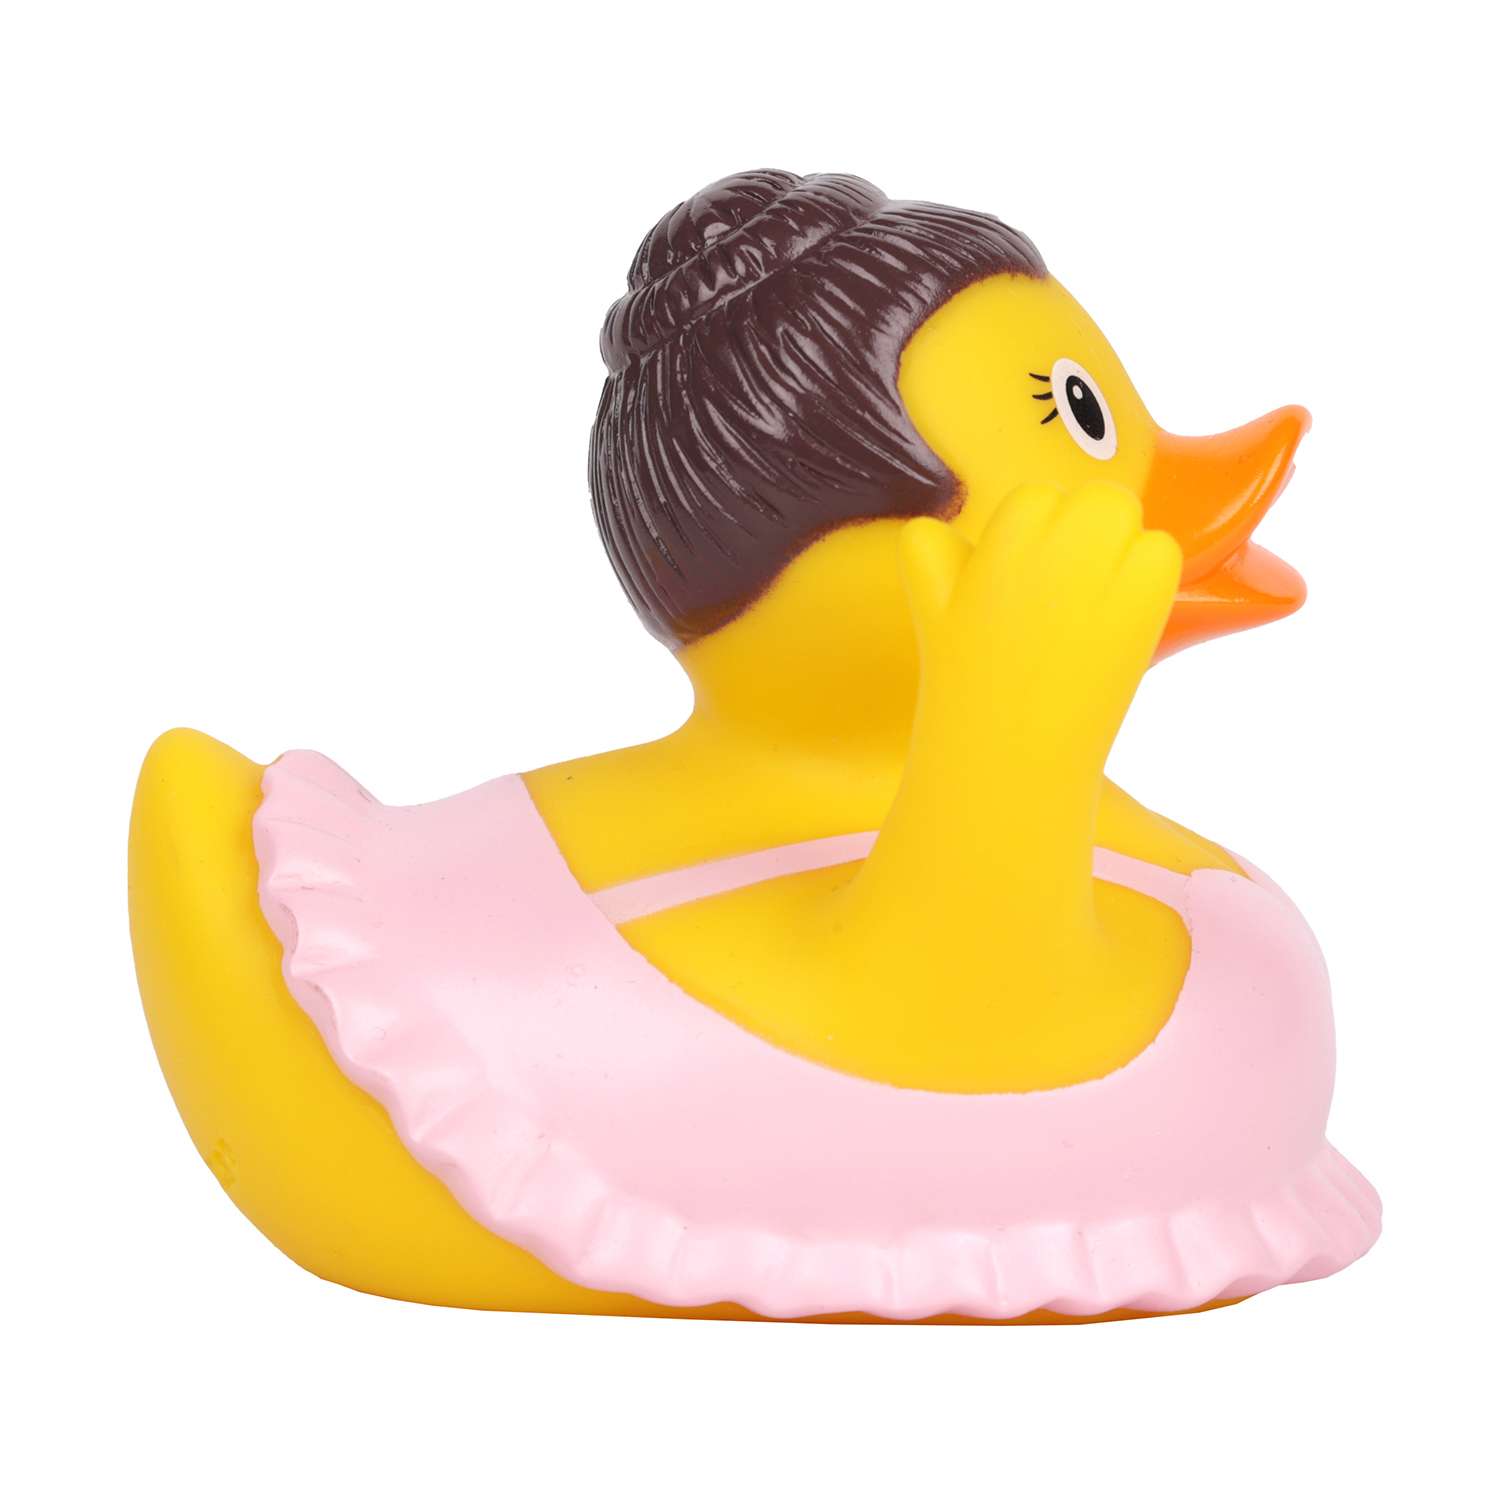 Игрушка для ванны сувенир Funny ducks Балерина уточка 1311 - фото 3